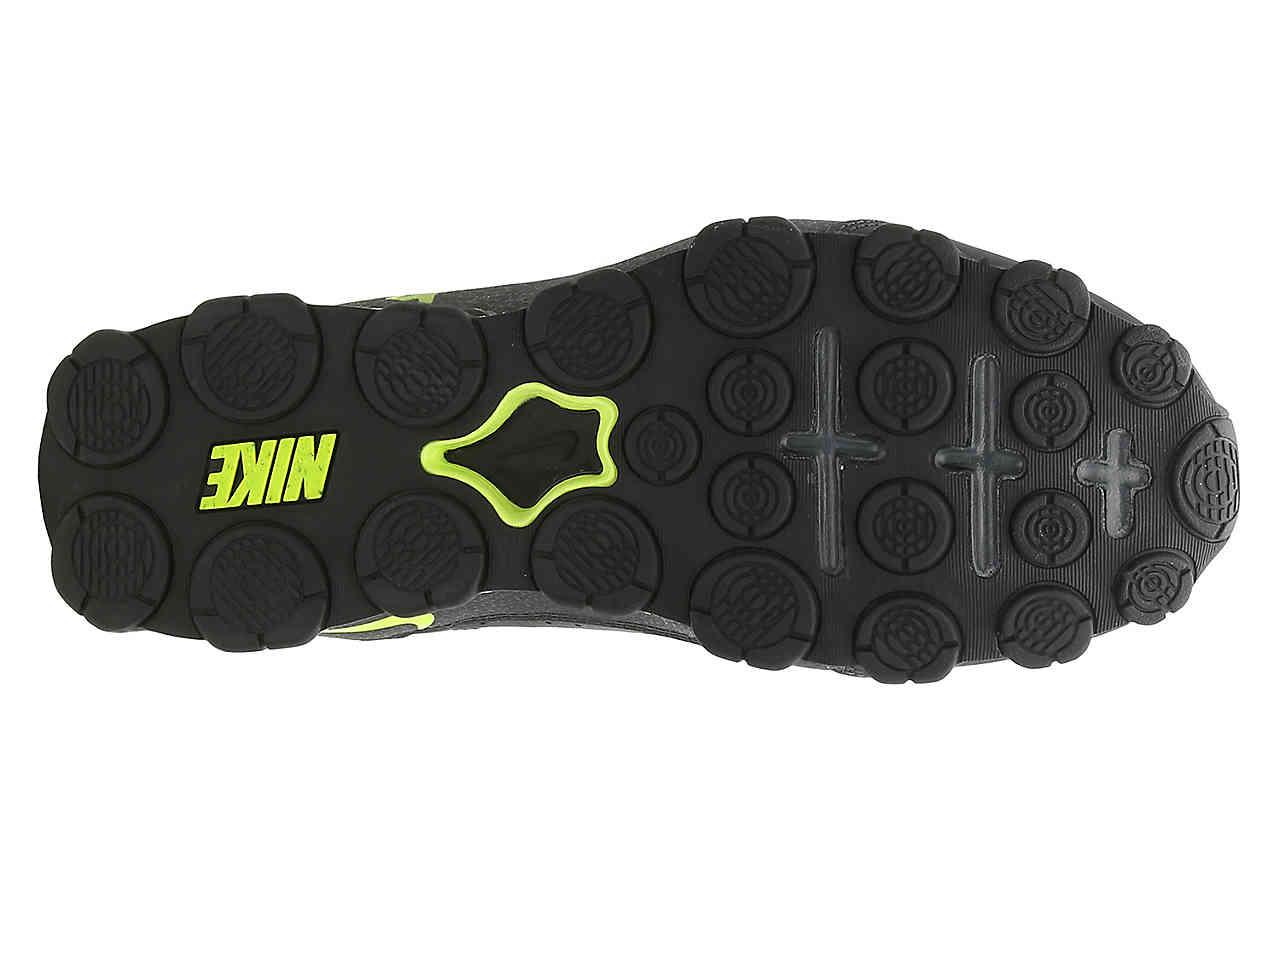 Nike Reax 8 Tr Training Shoe in Green for Men | Lyst